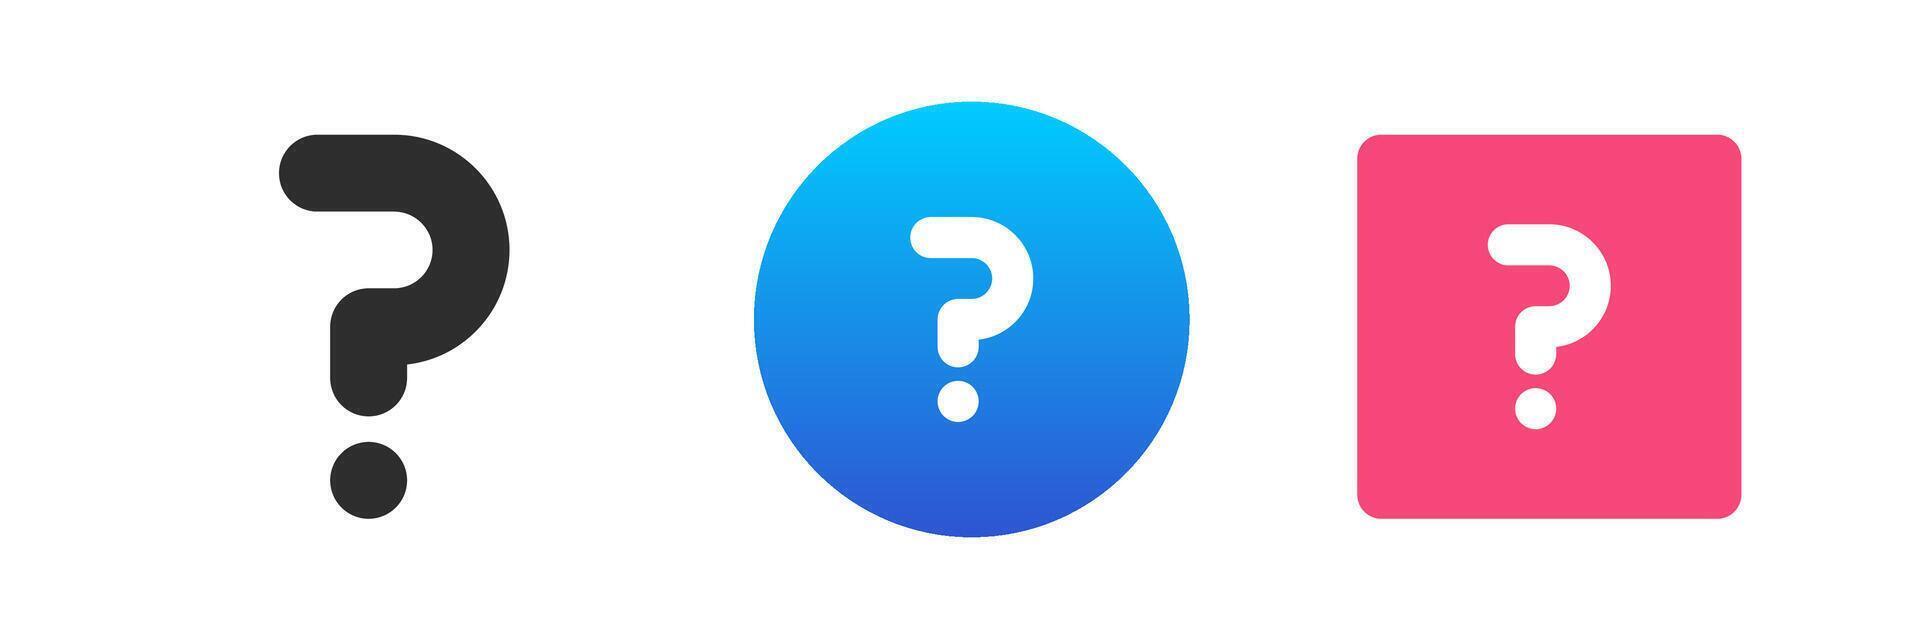 pregunta marca Preguntas más frecuentes información responder Guia ayuda apoyo icono conjunto plano ilustración vector